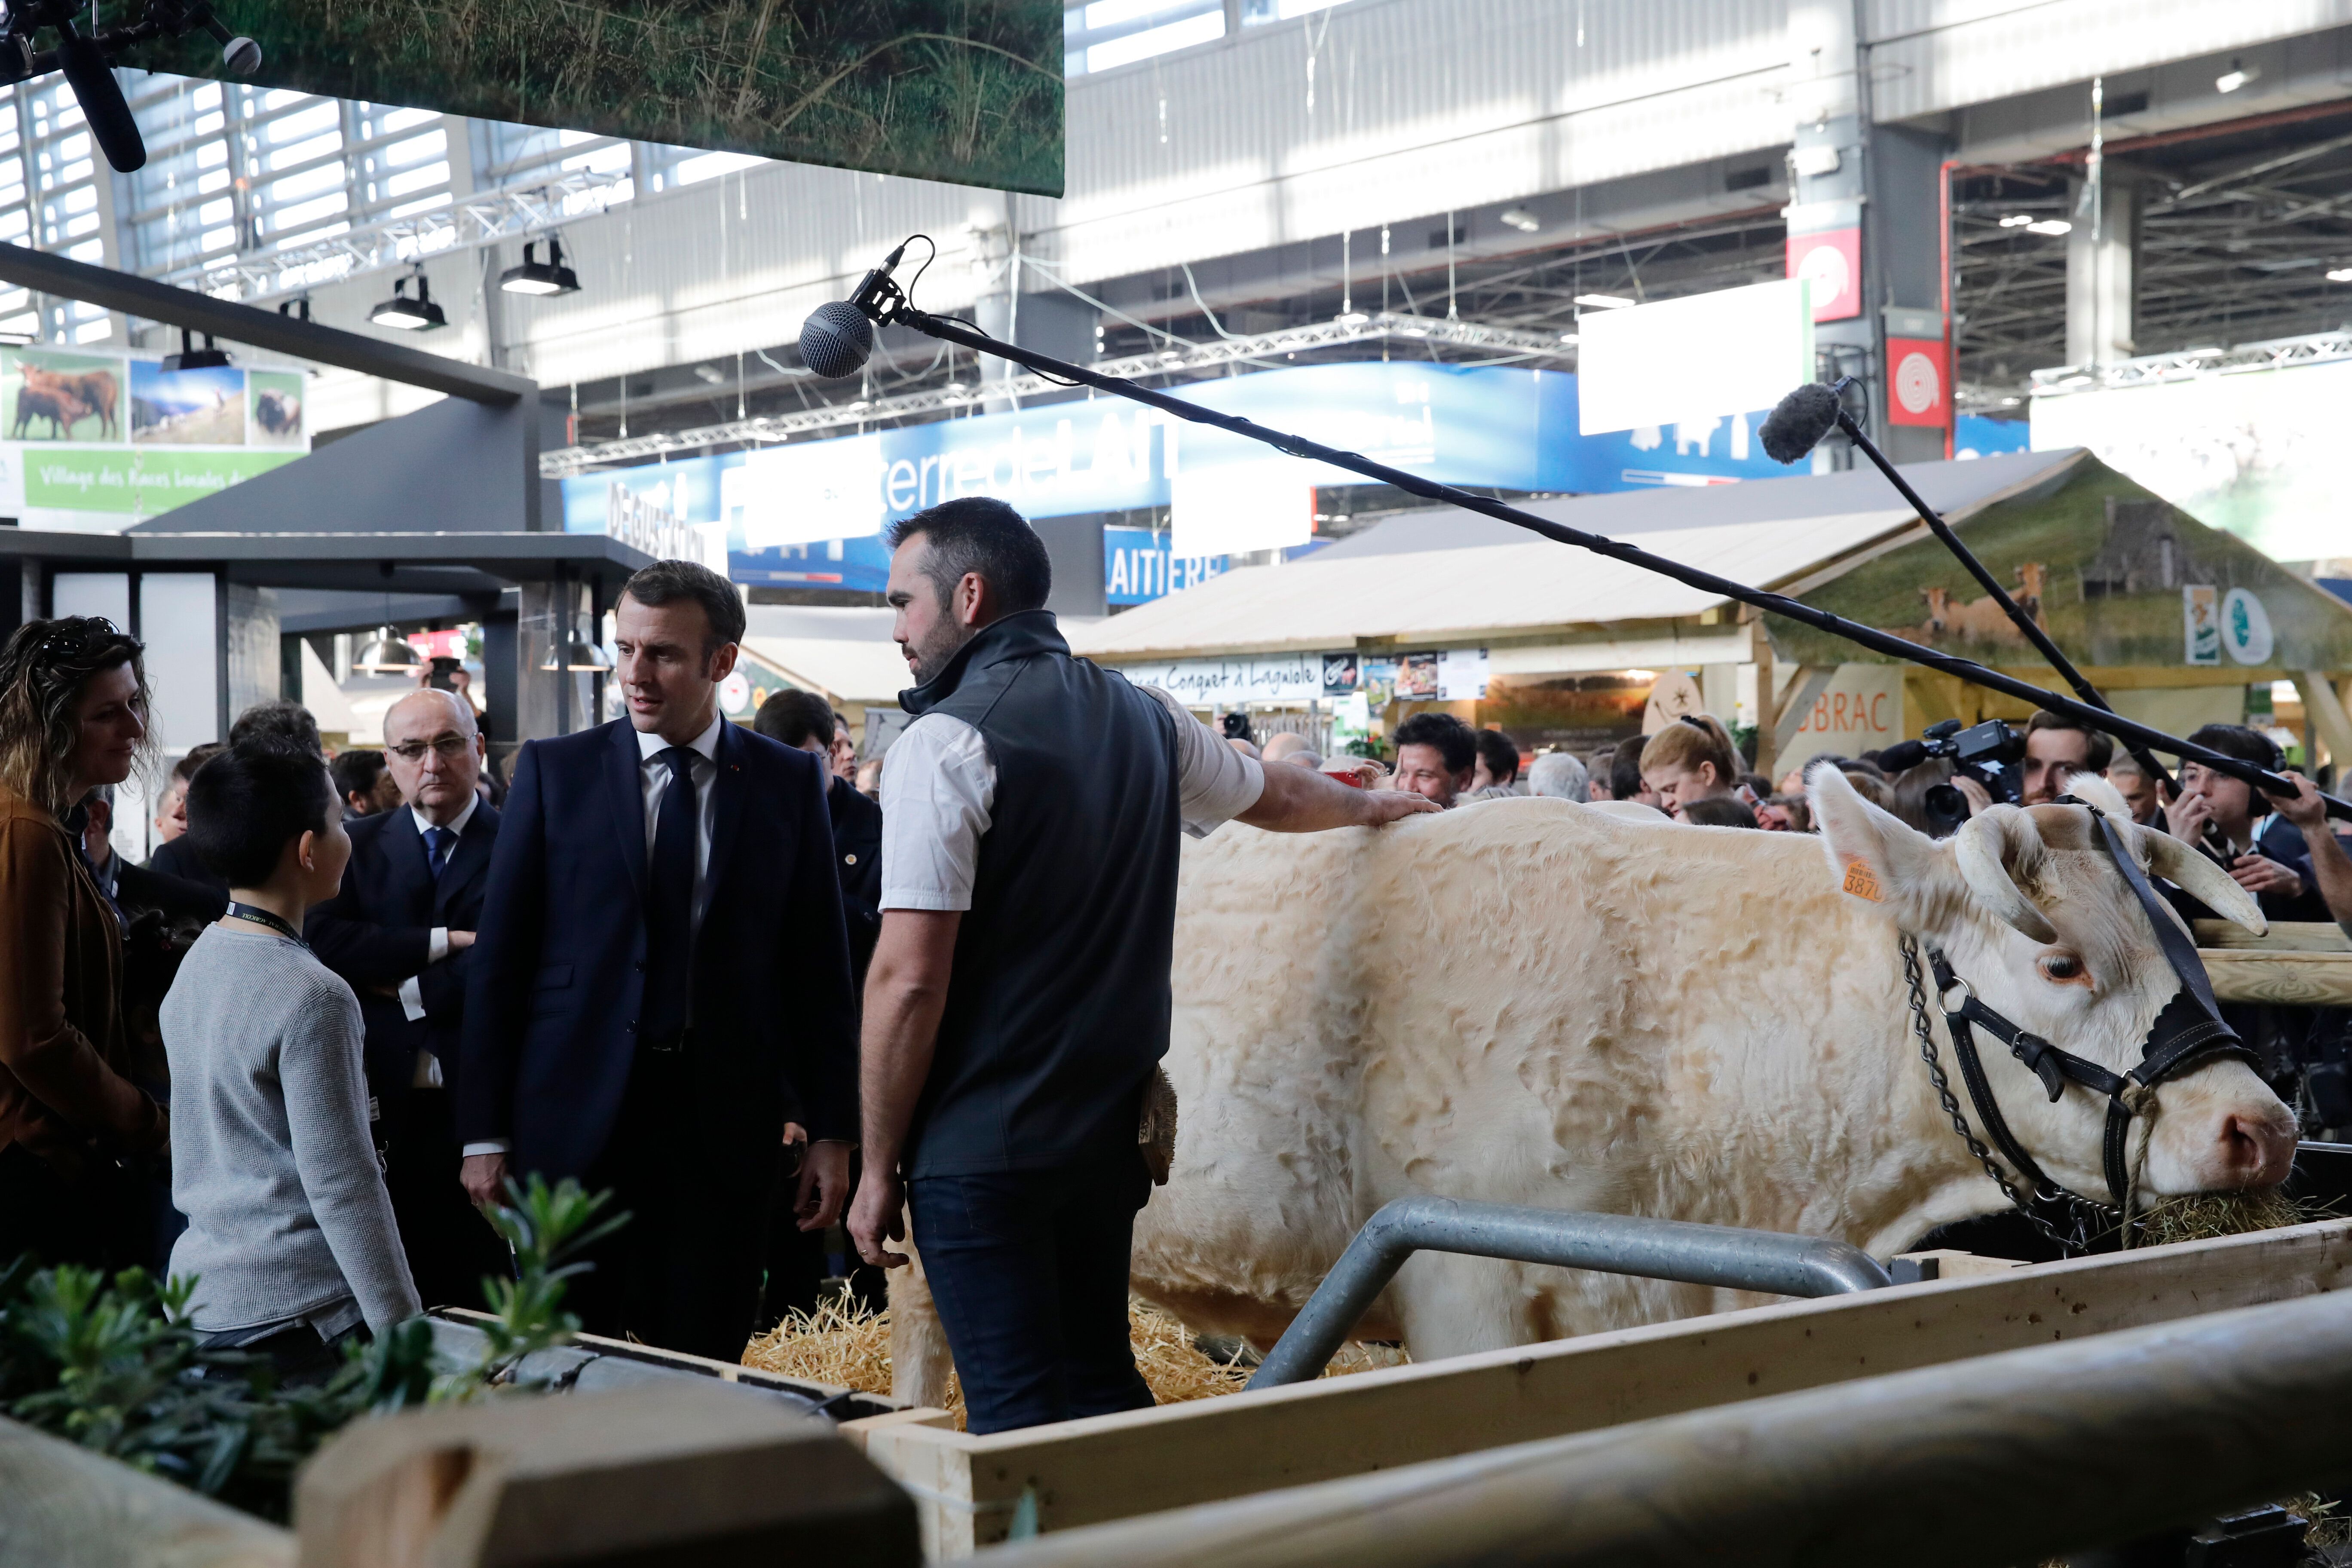 Le Salon de l'agriculture 2021 est annulé à cause du coronavirus (Image d'illustration: Emmanuel Macron...